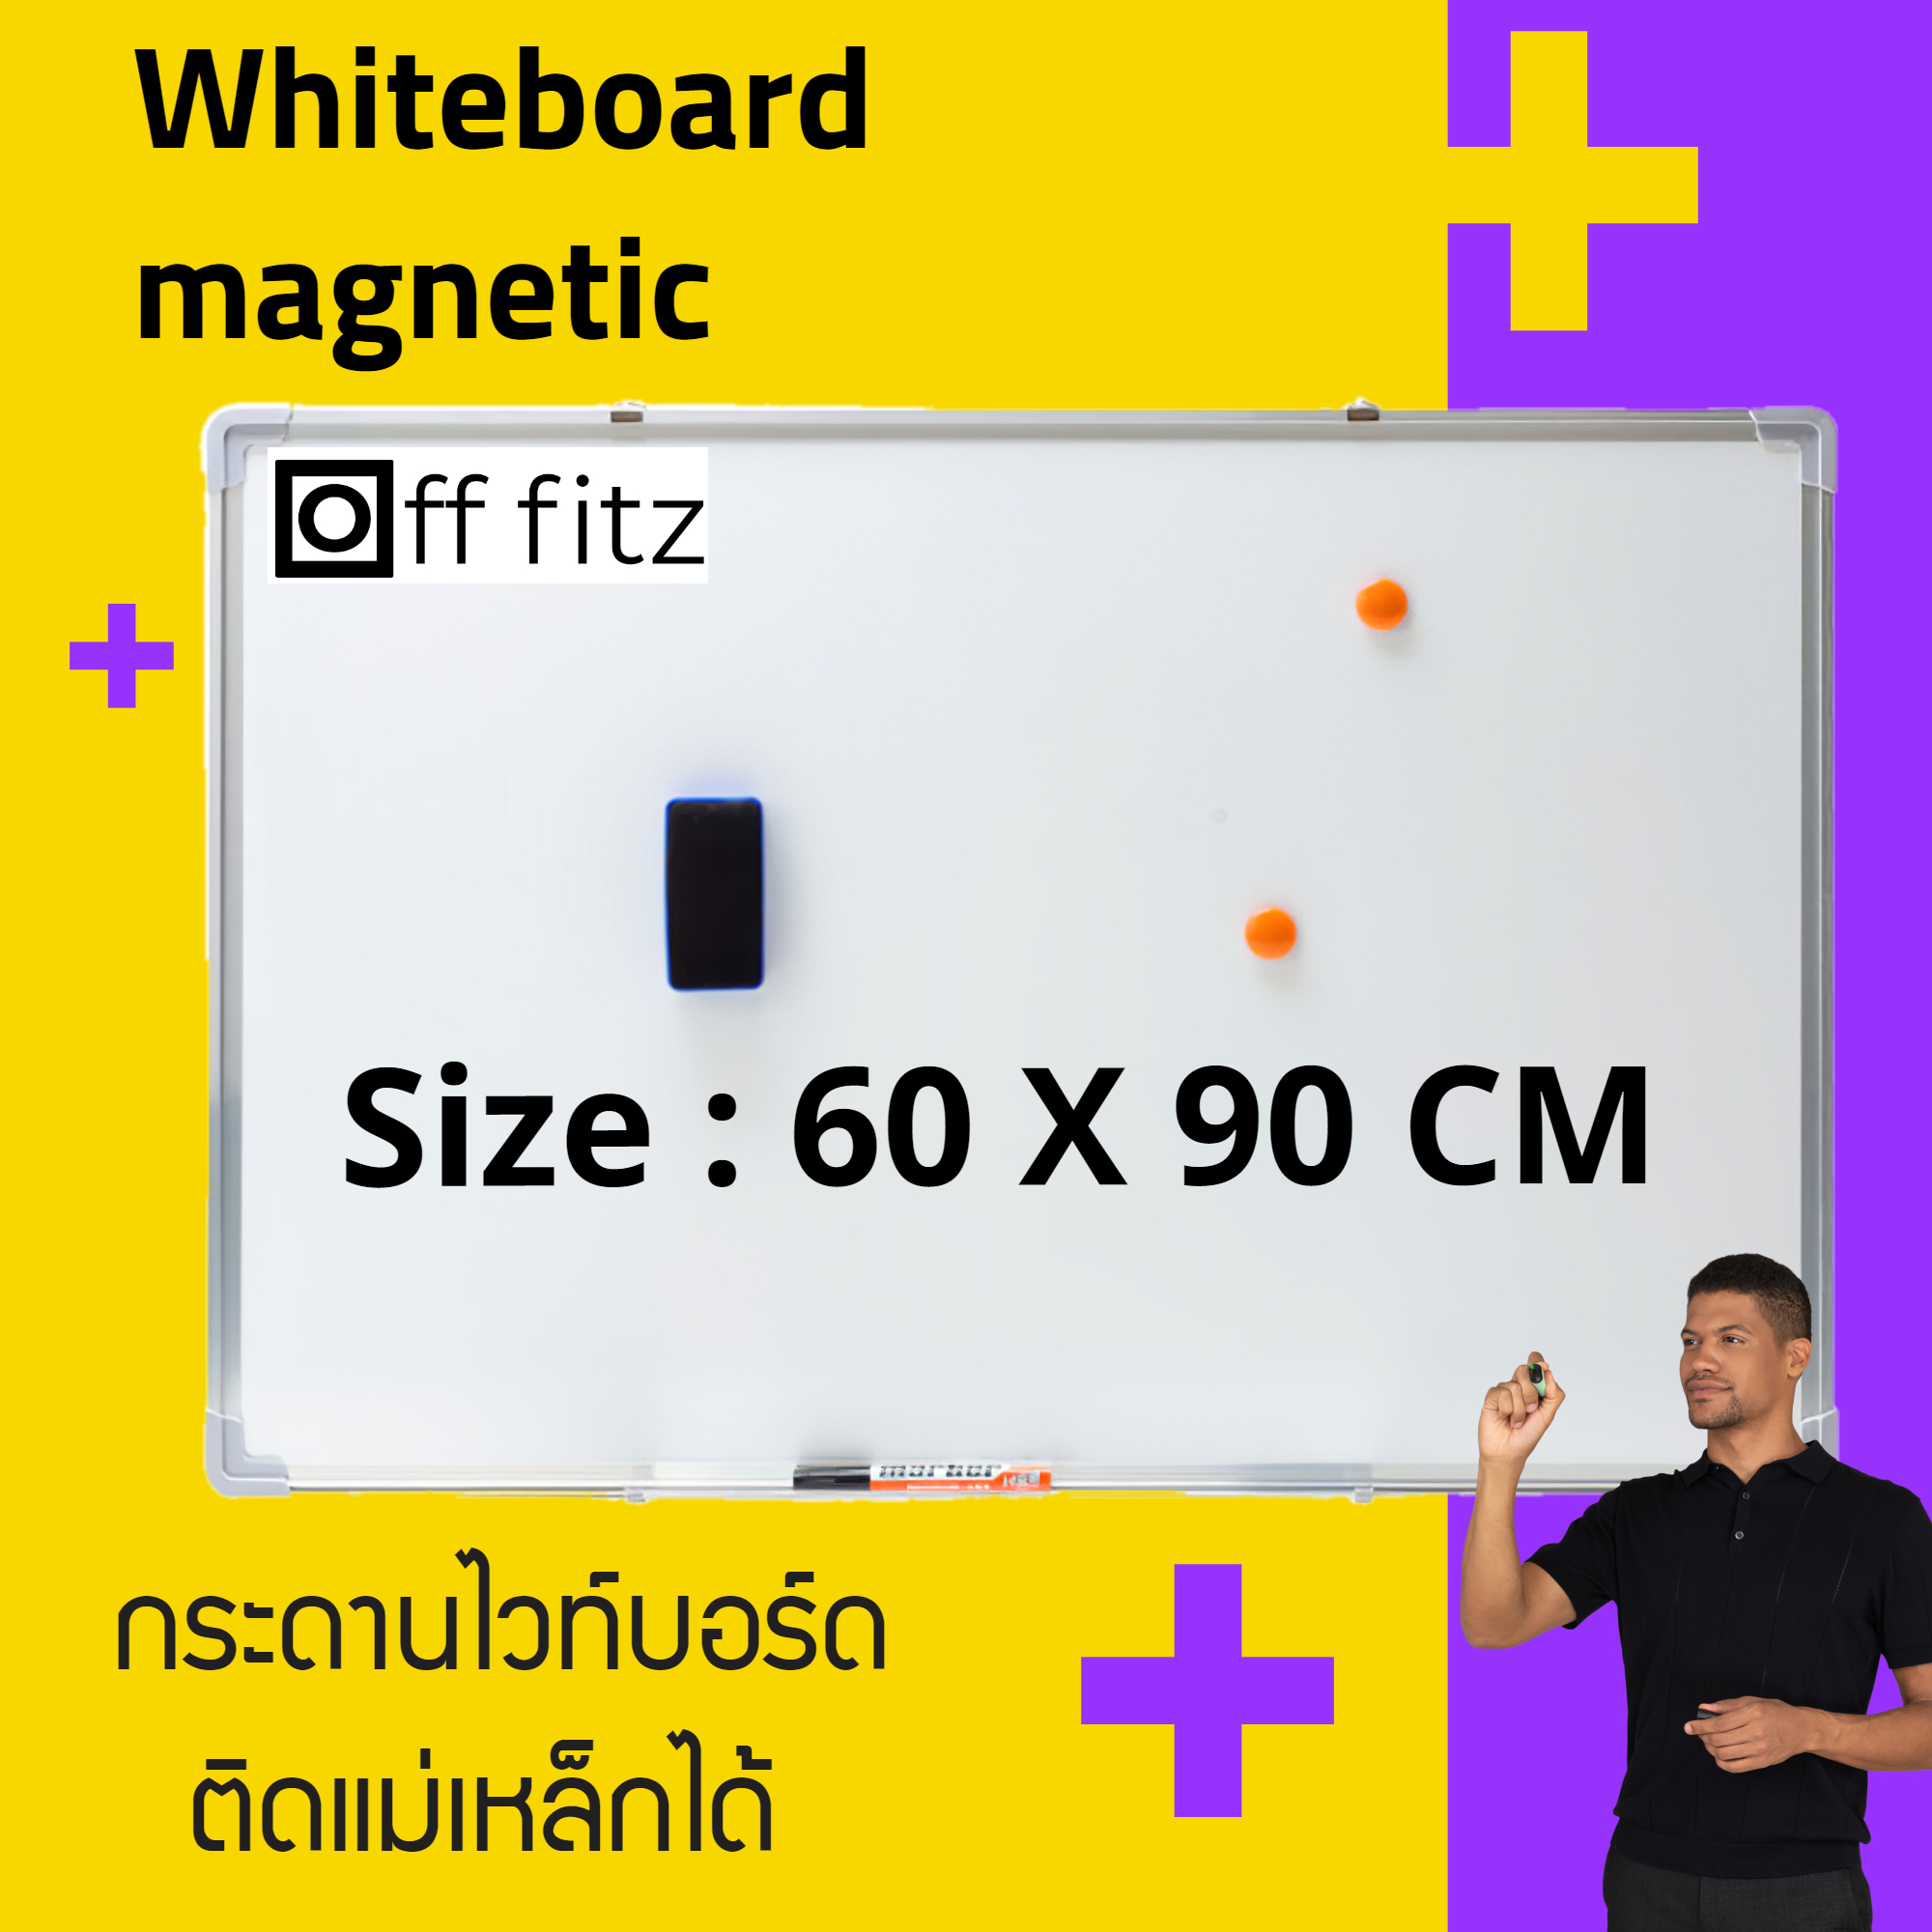 กระดานไวท์บอร์ด กระดานเขียนลบได้ กระดานไวบอร์ด กระดานแม่เหล็ก  แม่เหล็ก  กระดาน ไวท์บอร์ด ราคา ถูก  white board ขนาด 60x90 cm + แถมฟรีอุปกรณ์